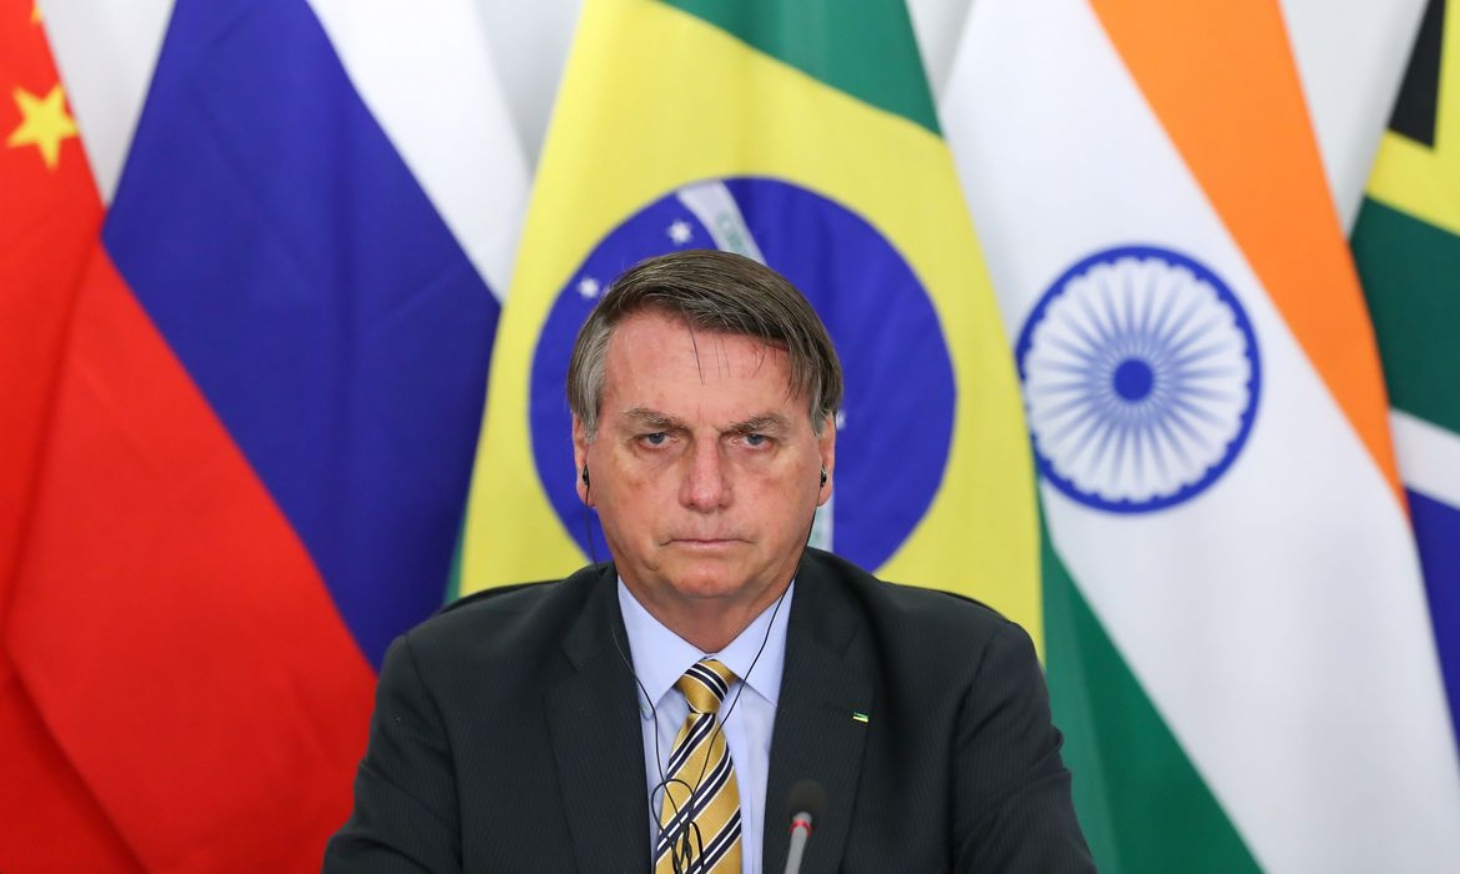 Brasil divulgará lista de importadores de madeira ilegal, diz Bolsonaro | Jornal da Orla